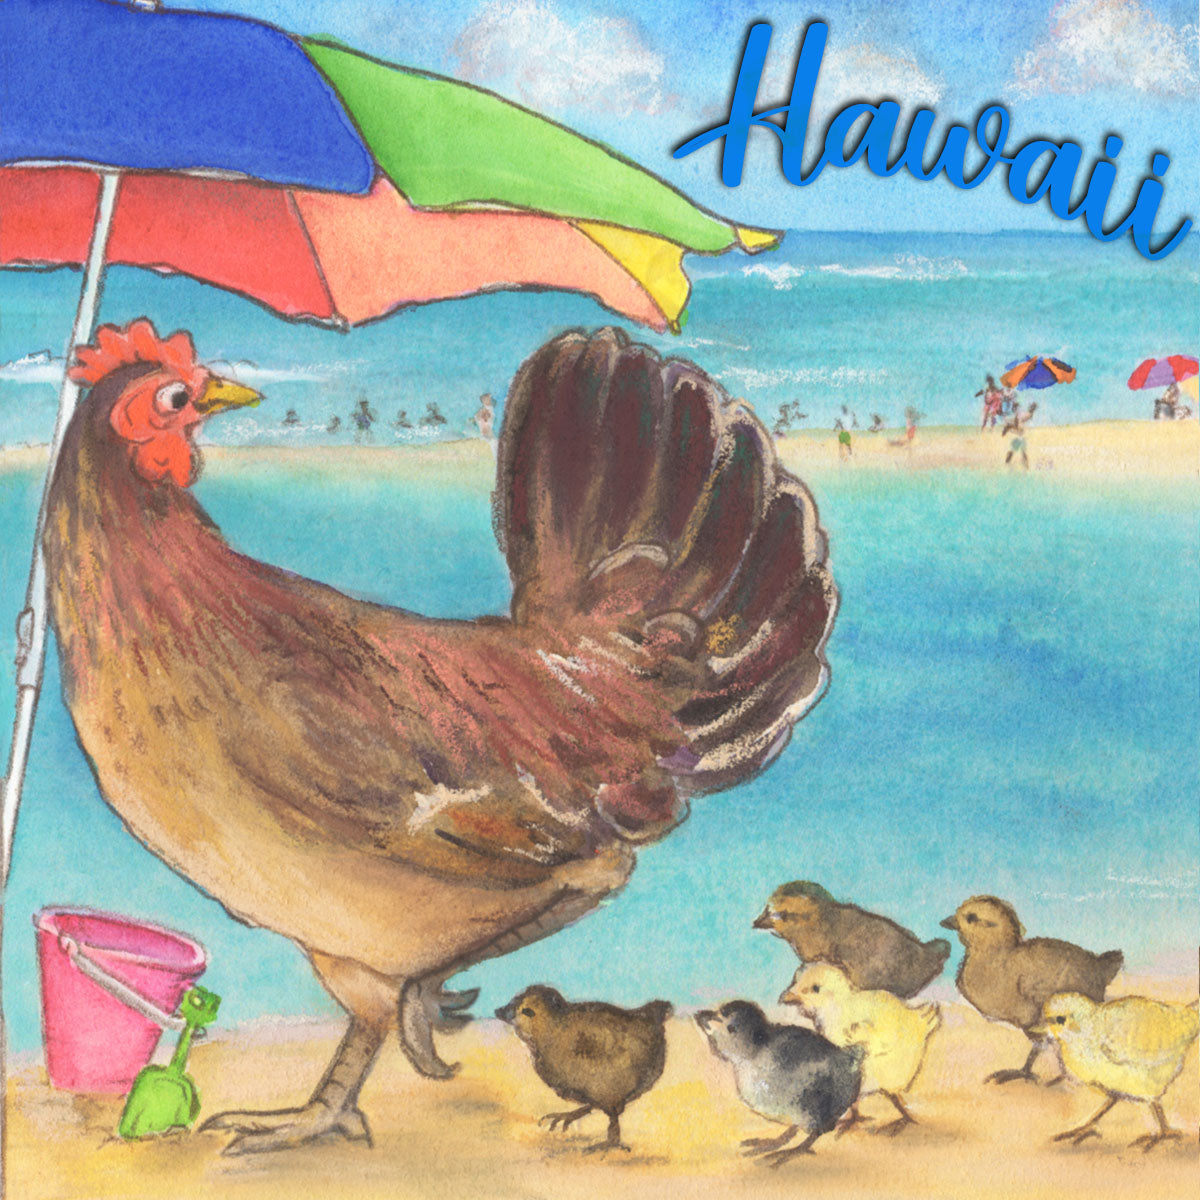 Poipu Beach Chickens Coaster